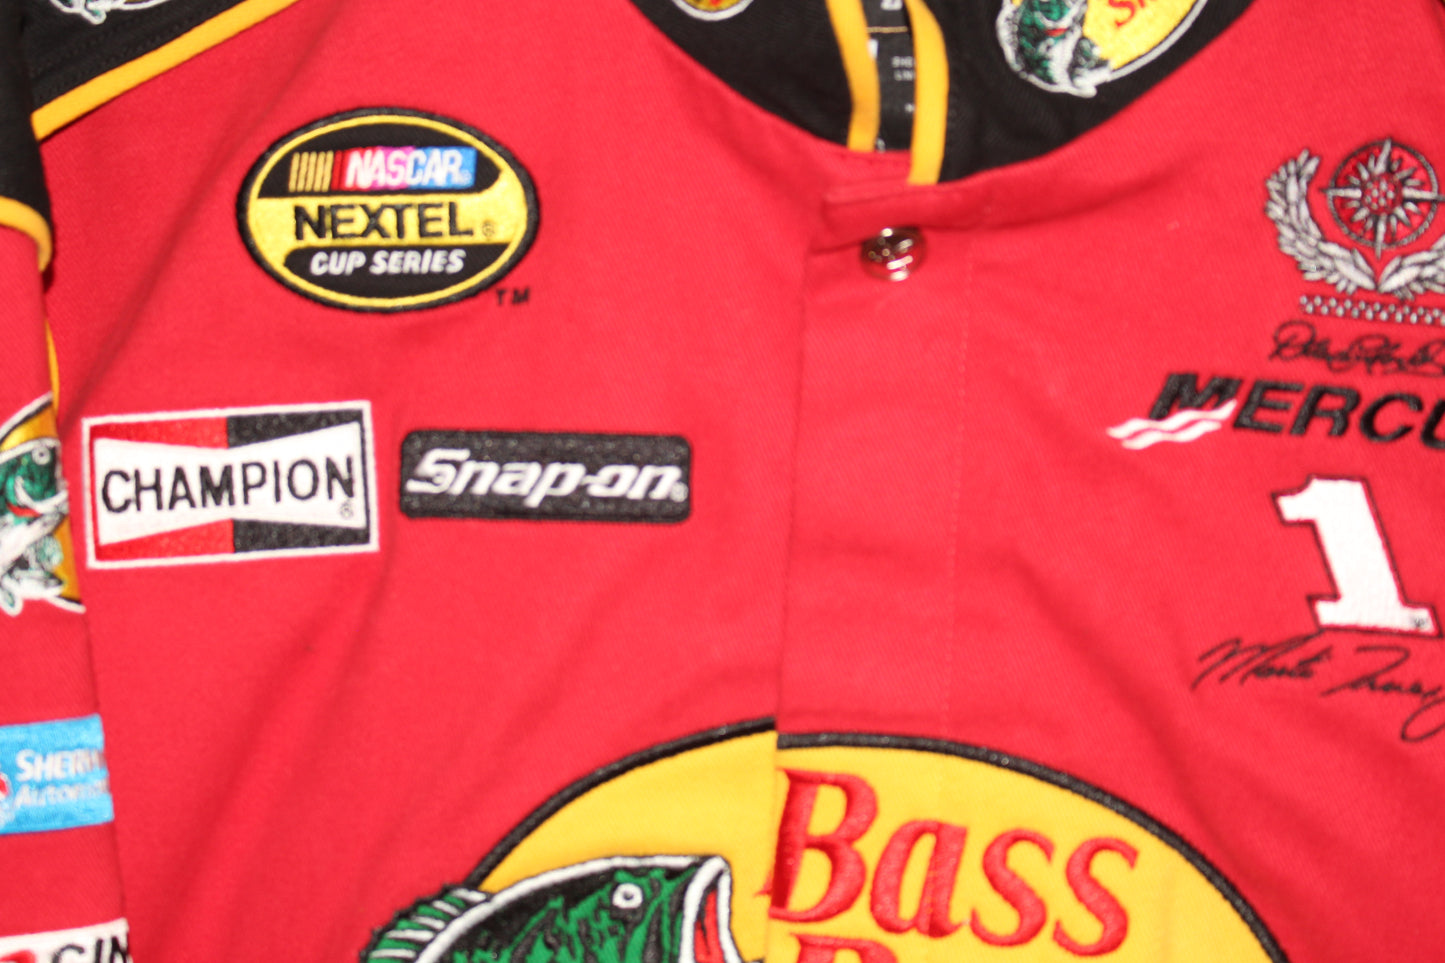 Bass Pro Shop Racing NASCAR Martin Truex Jr #1 (XL)